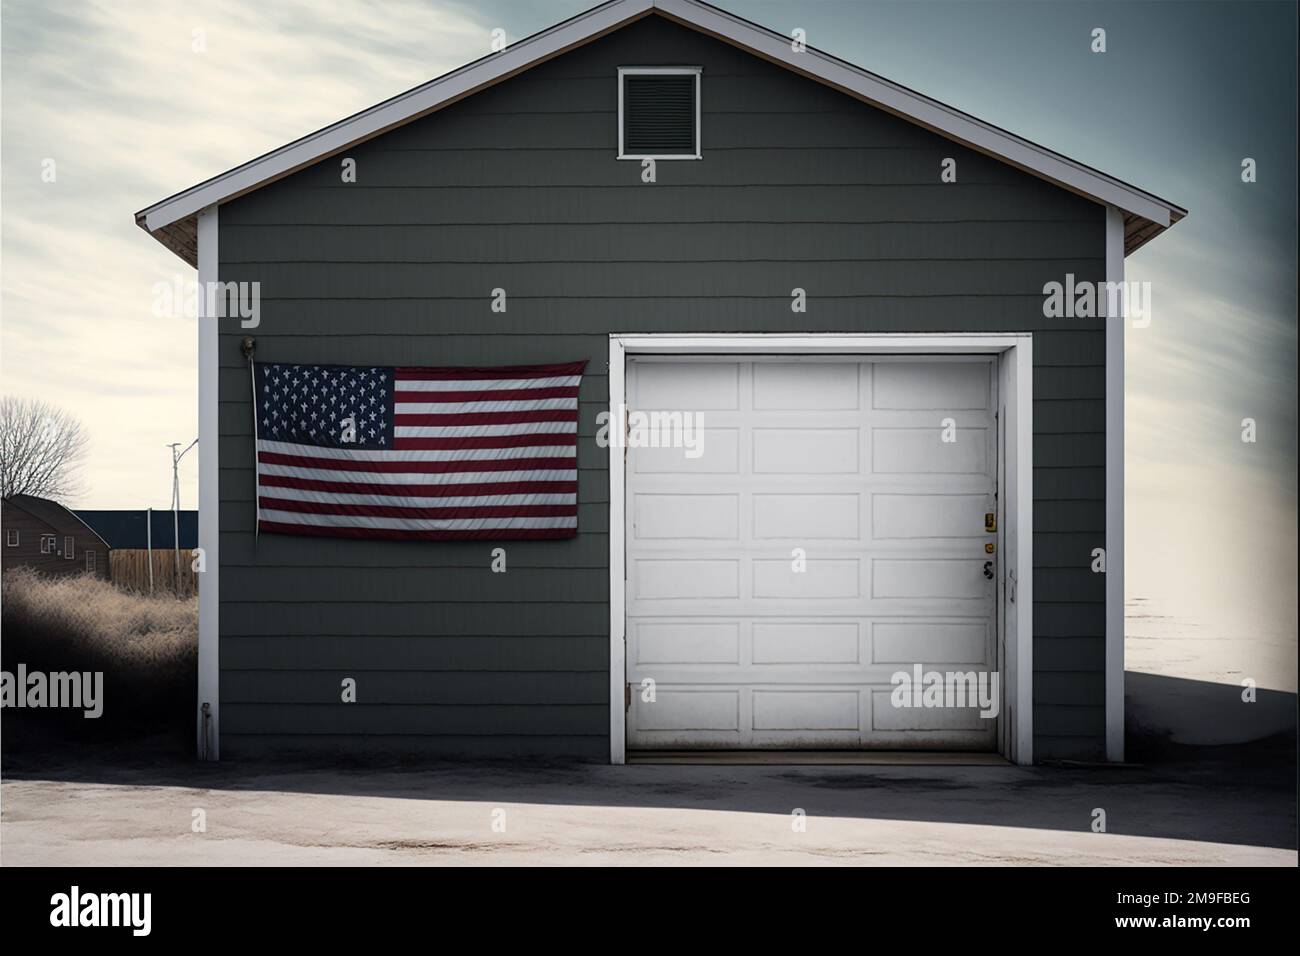 Porte de garage avec drapeau américain Banque D'Images